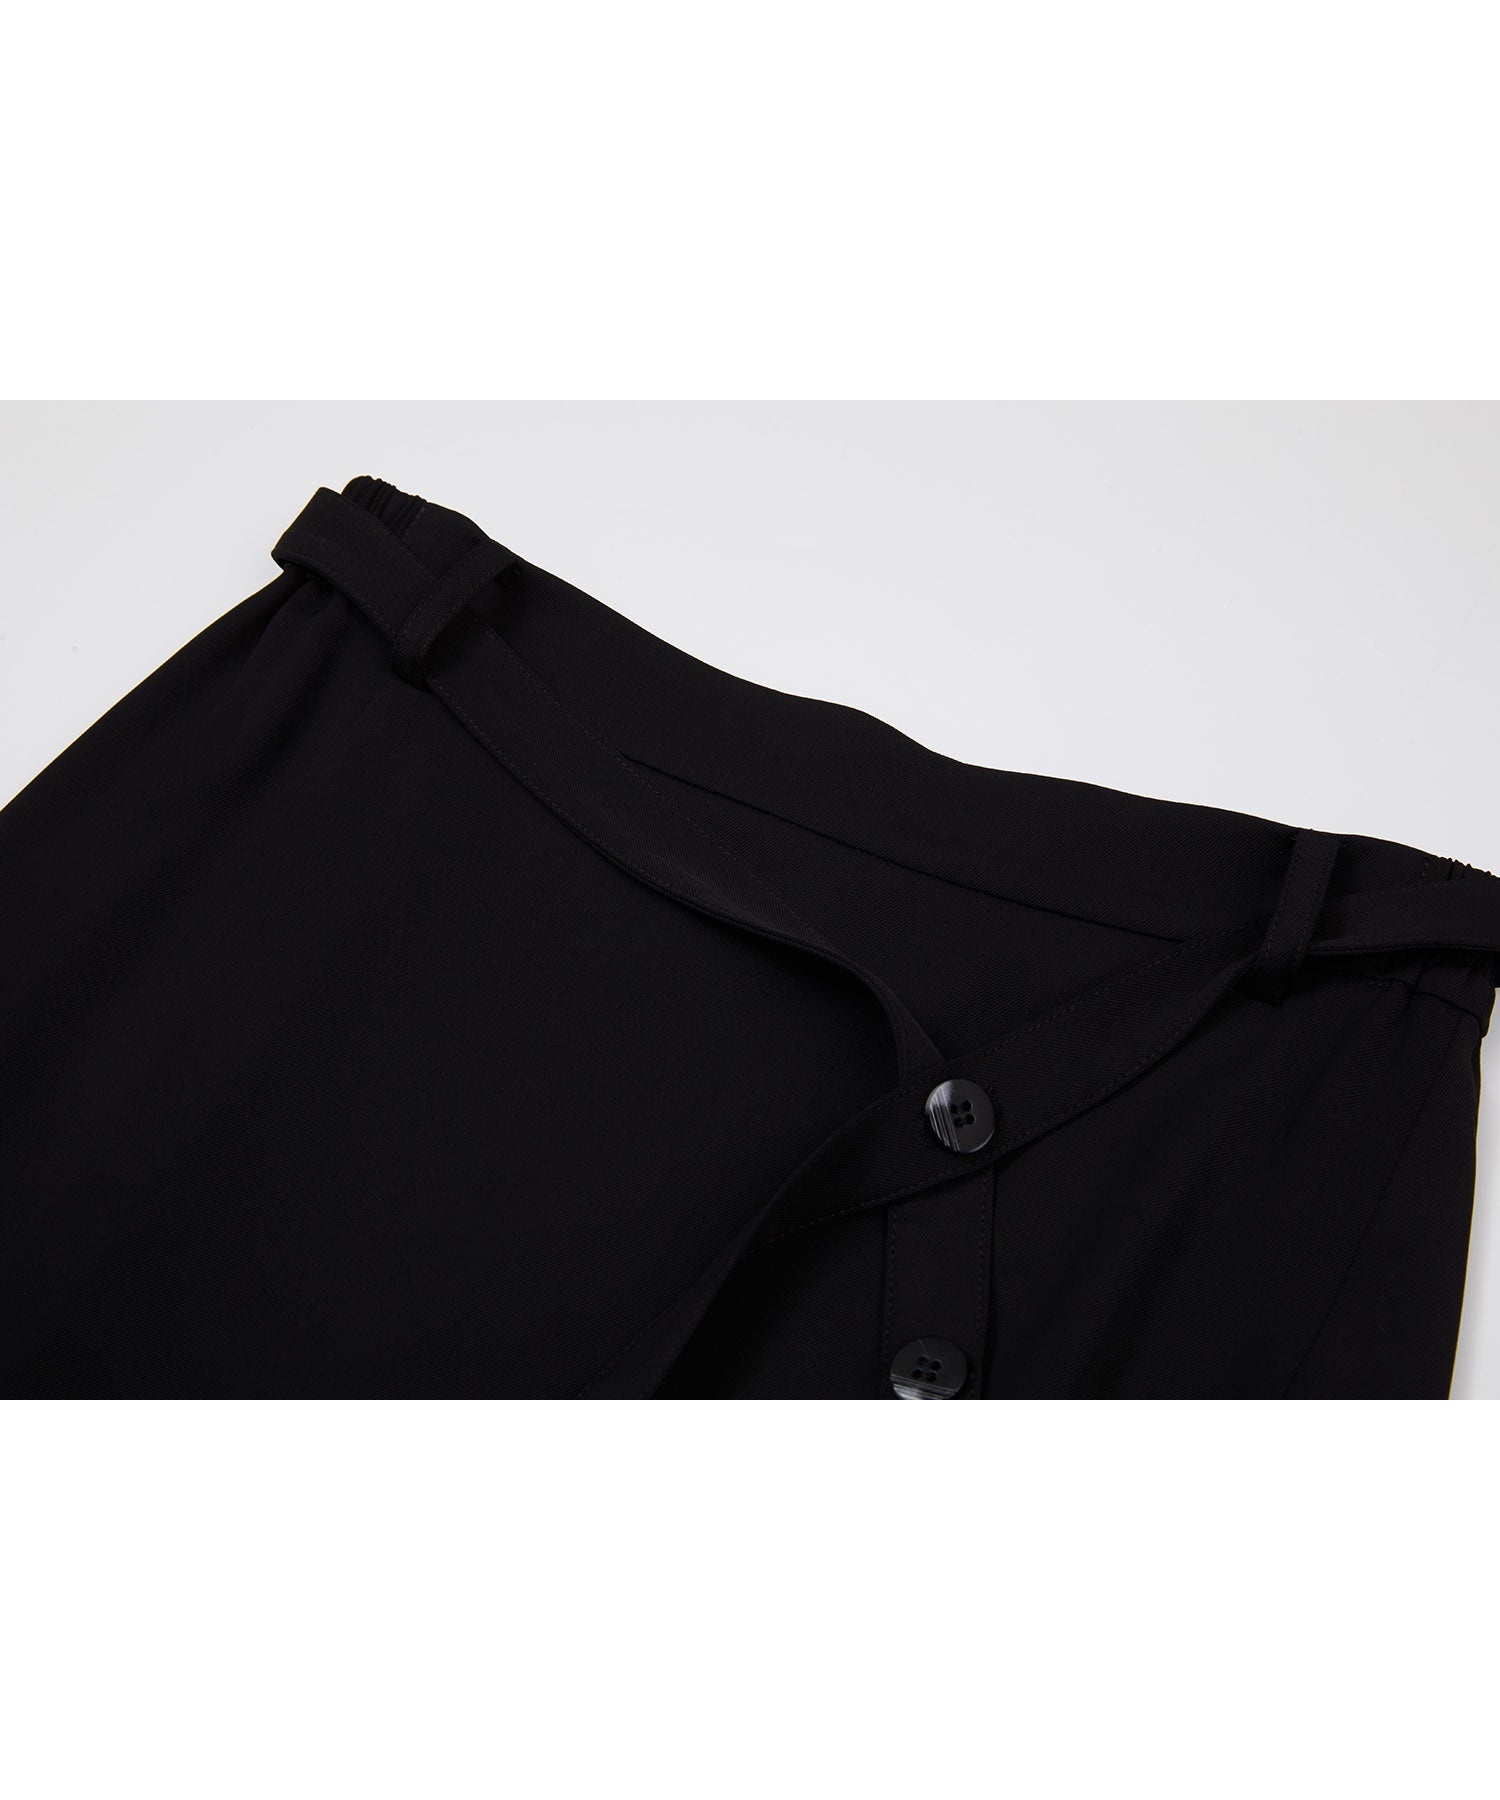 Asymmetric tight skirt with waist belt 